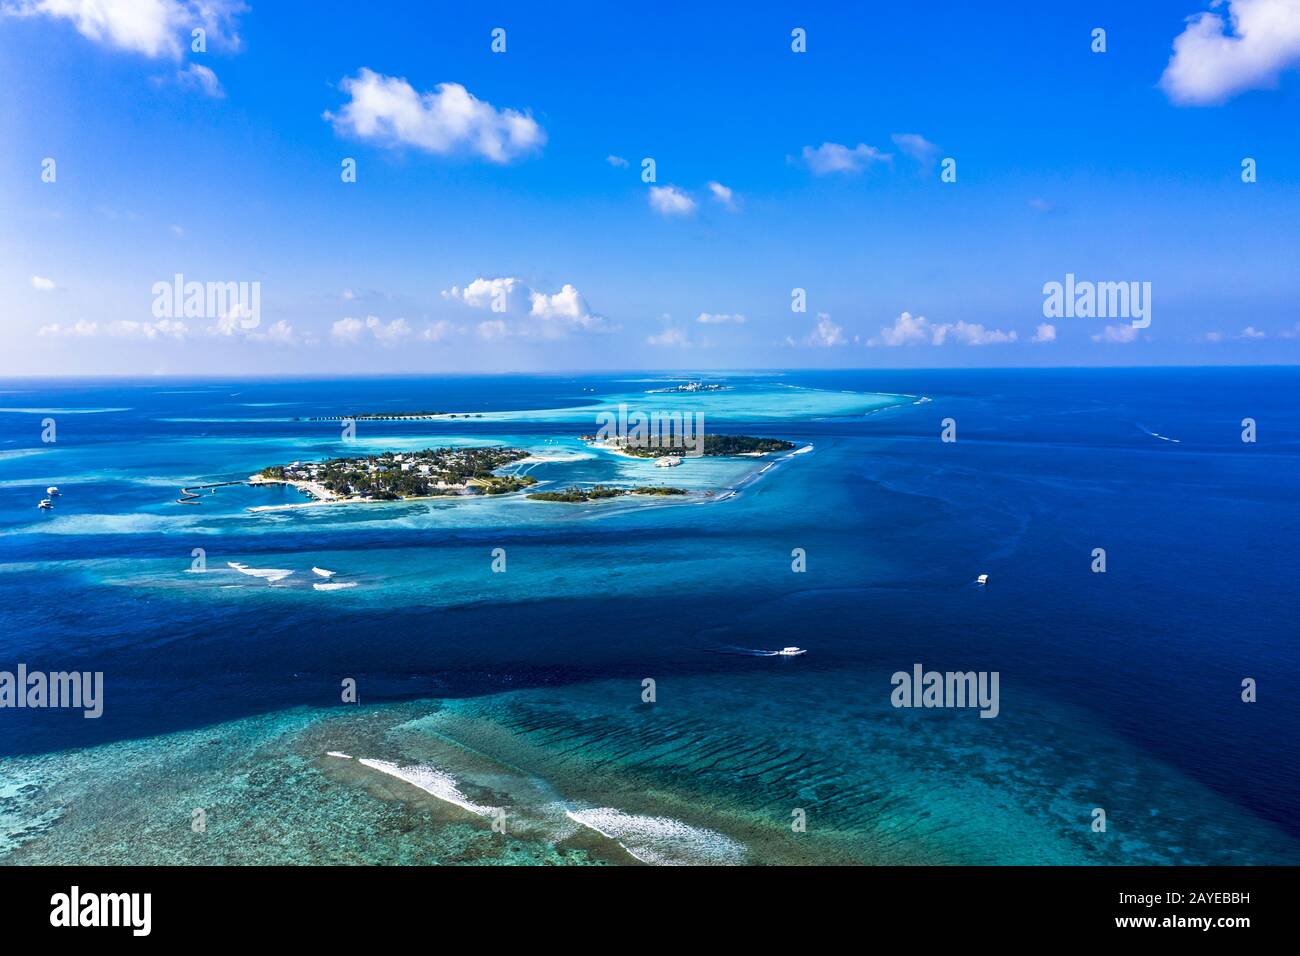 Vue aérienne, île des Maldives Kandooma et lagon de Guraidhoo, atoll de South Malé, Maldives Banque D'Images